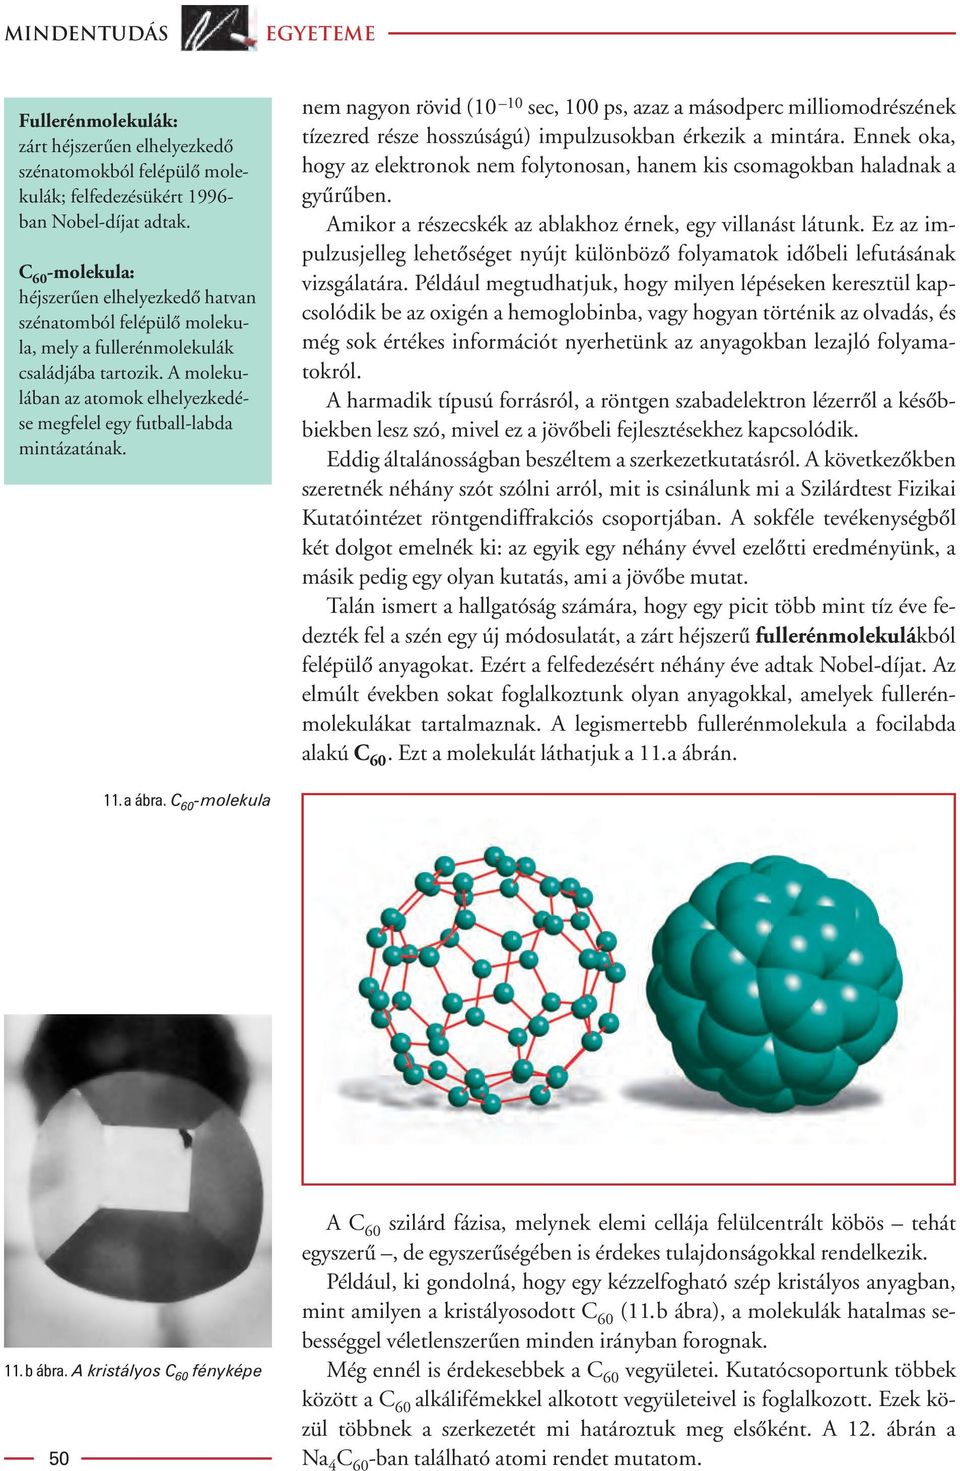 A molekulában az atomok elhelyezkedése megfelel egy futball-labda mintázatának.